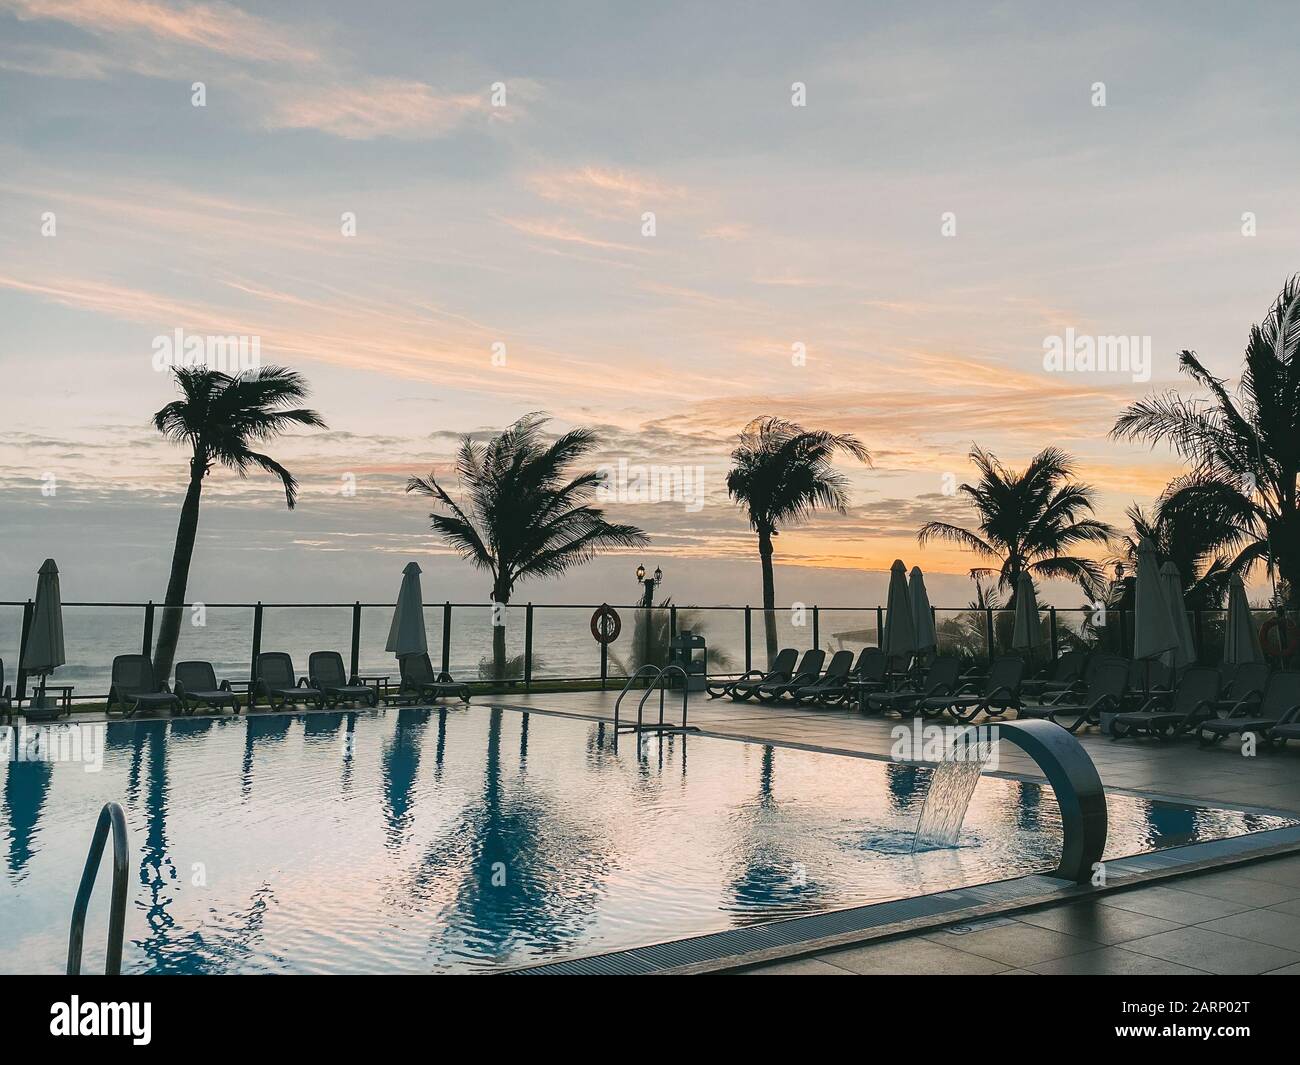 Piscina, palme intorno, riflessione di palme in piscina, alba con un bel cielo nuvoloso. Un'area vuota con molti lettini, il pas del sole Foto Stock